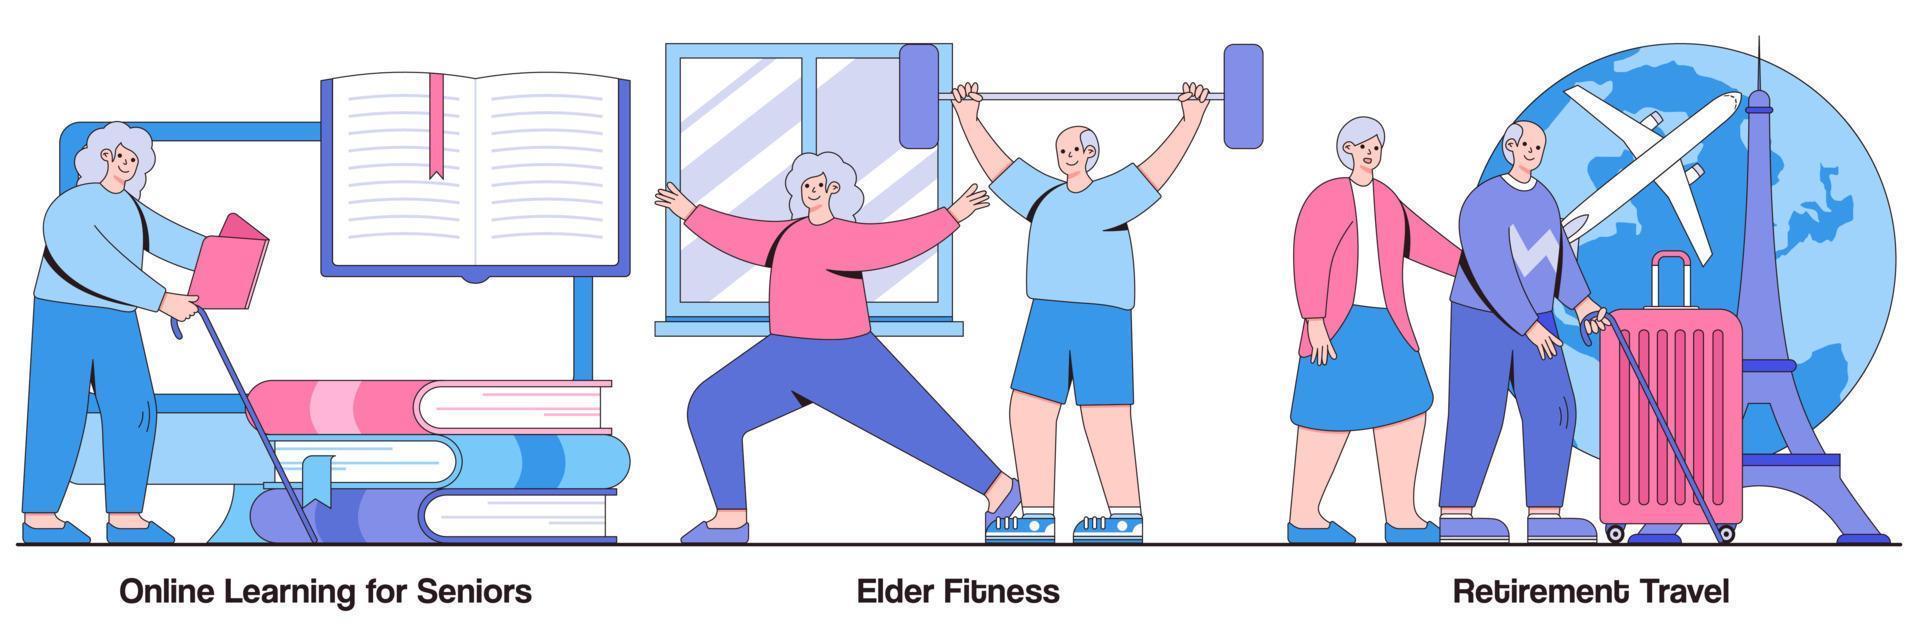 Online-Lernen für Senioren, Fitness für Senioren, Reisen in den Ruhestand mit Illustrationspaket für Menschen vektor